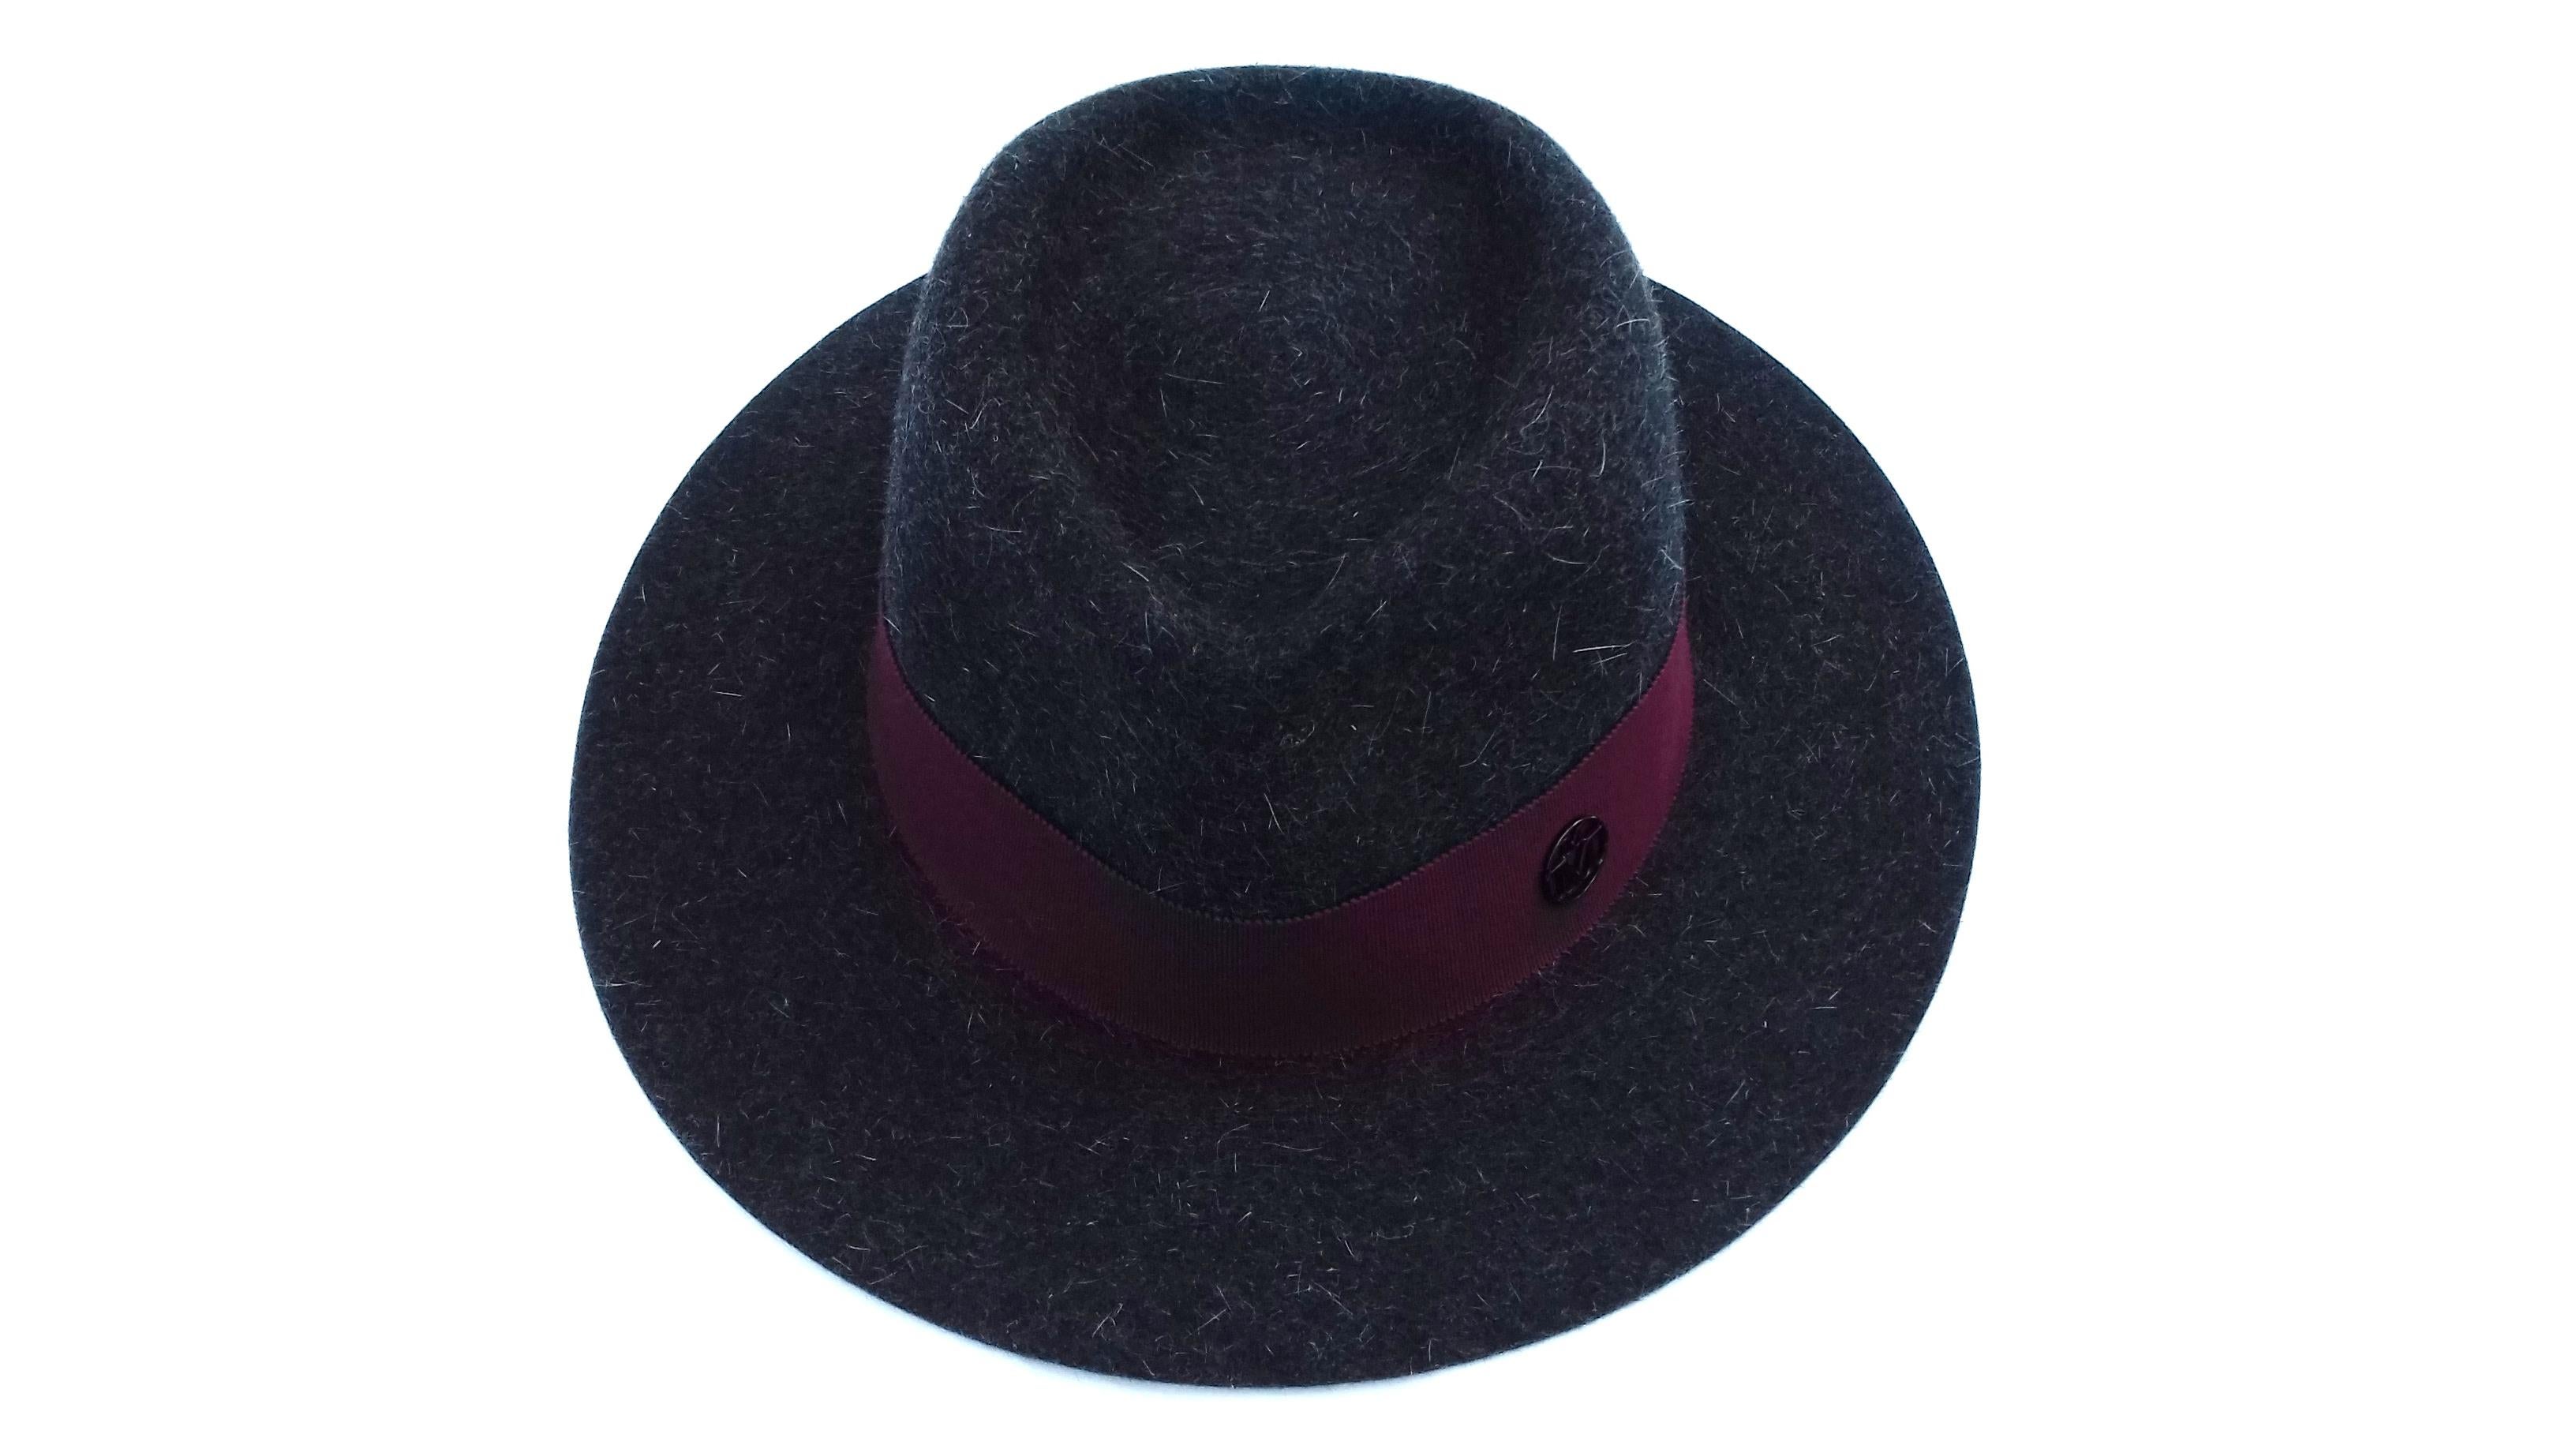 Black MAISON MICHEL Paris Andre Fedora Felt Hat in Charcoal Grey Size M For Sale